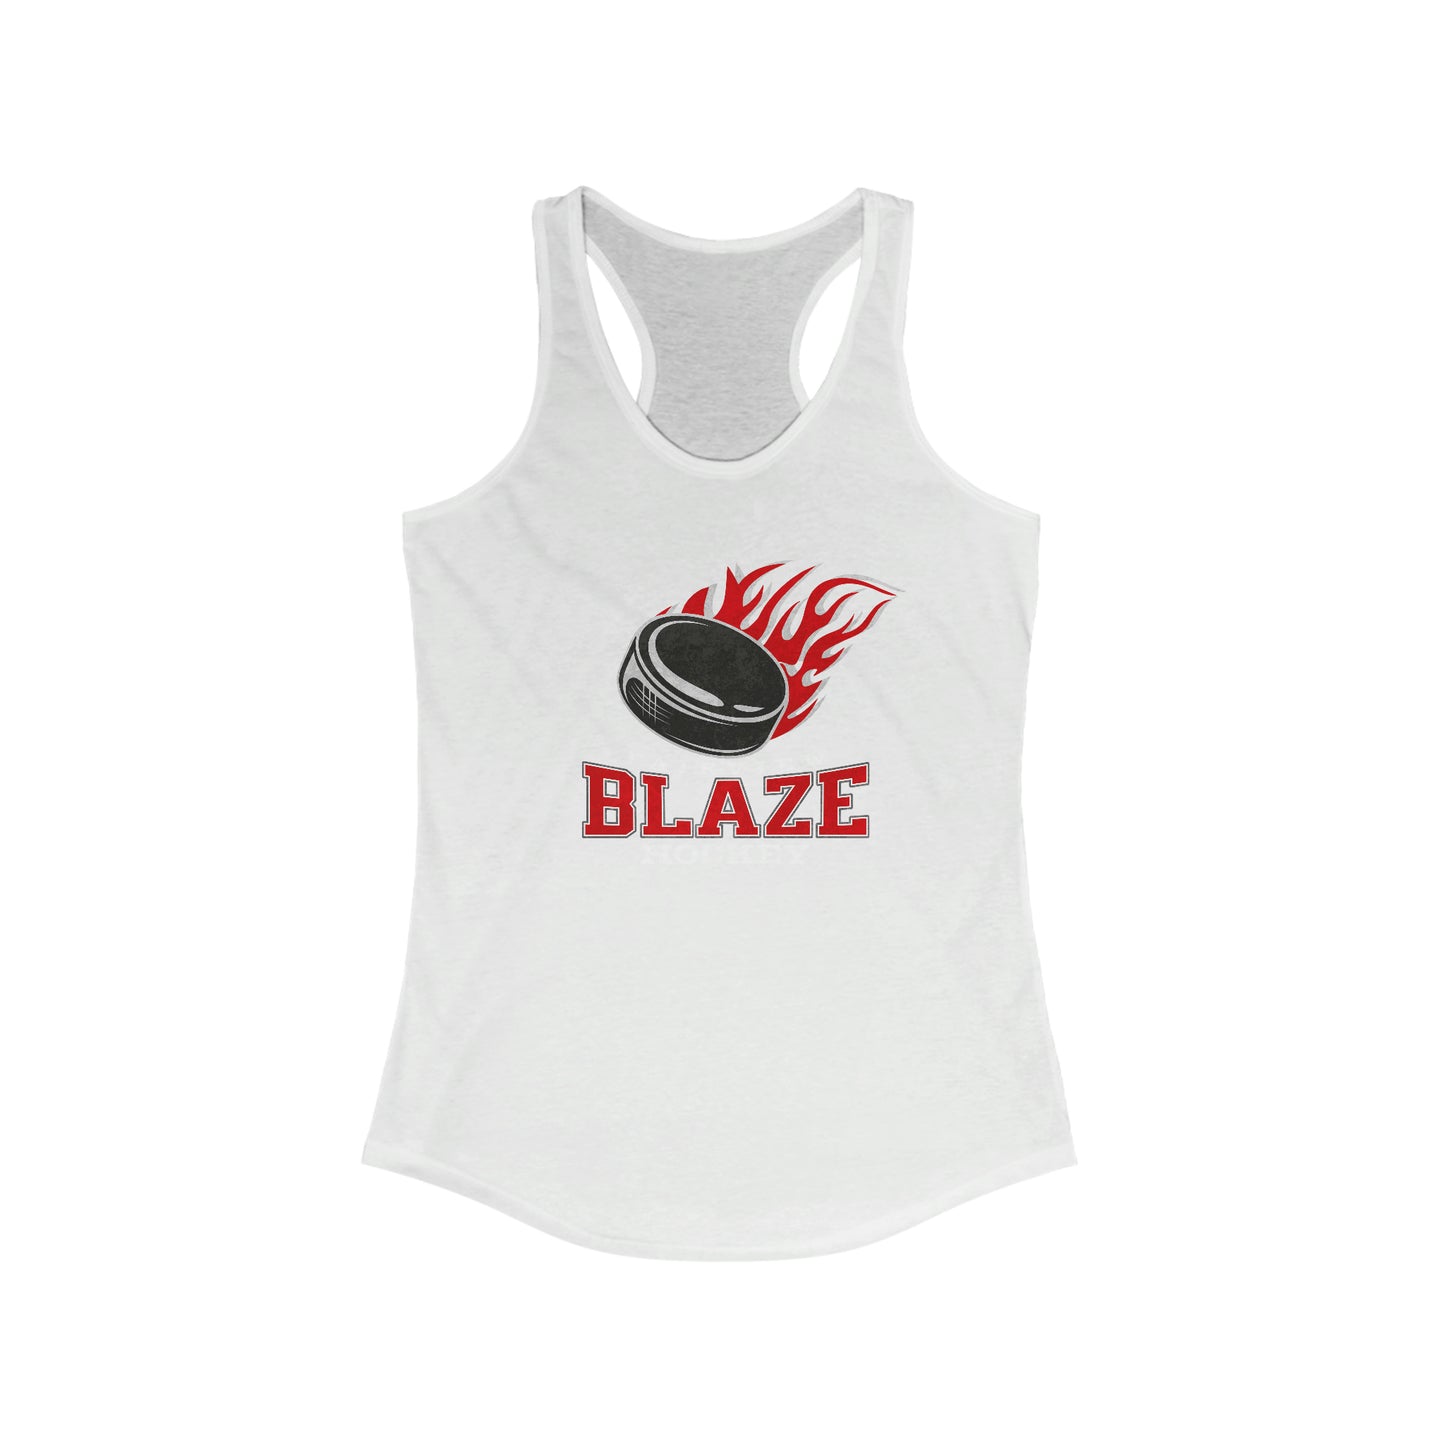 BLAZE Women's Ideal Racerback Tank